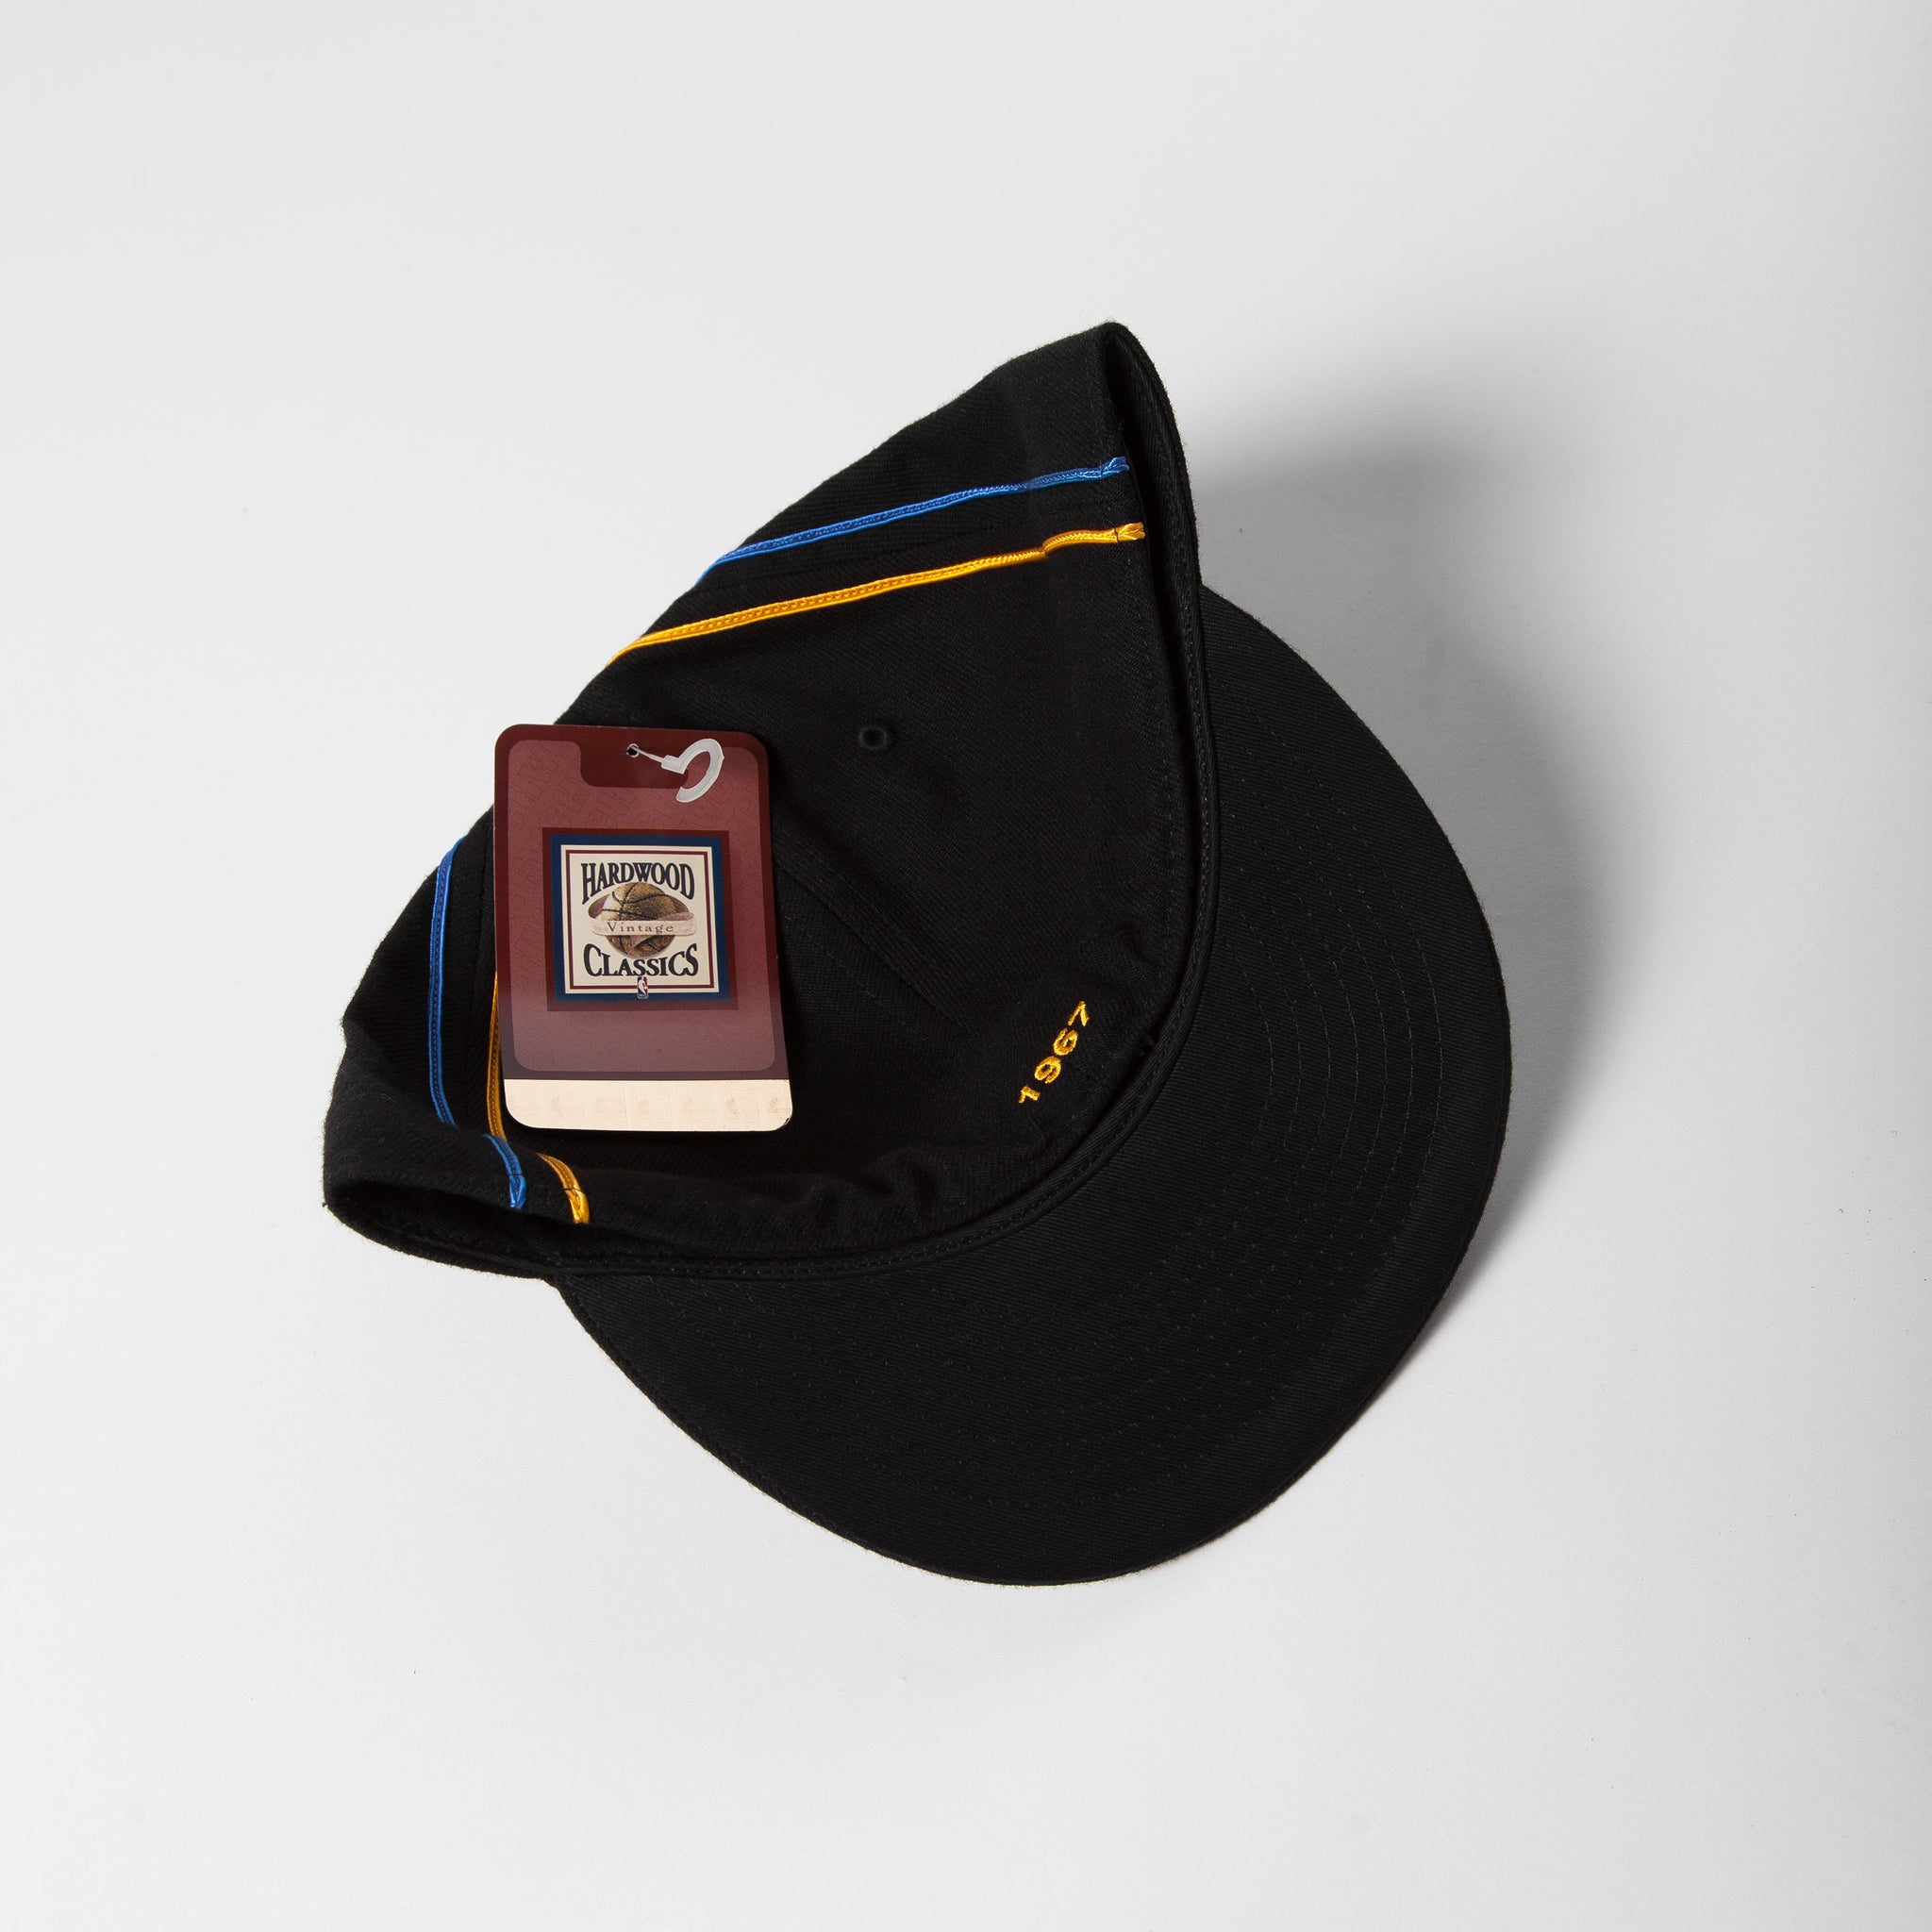 Vintage Men's Caps - Black